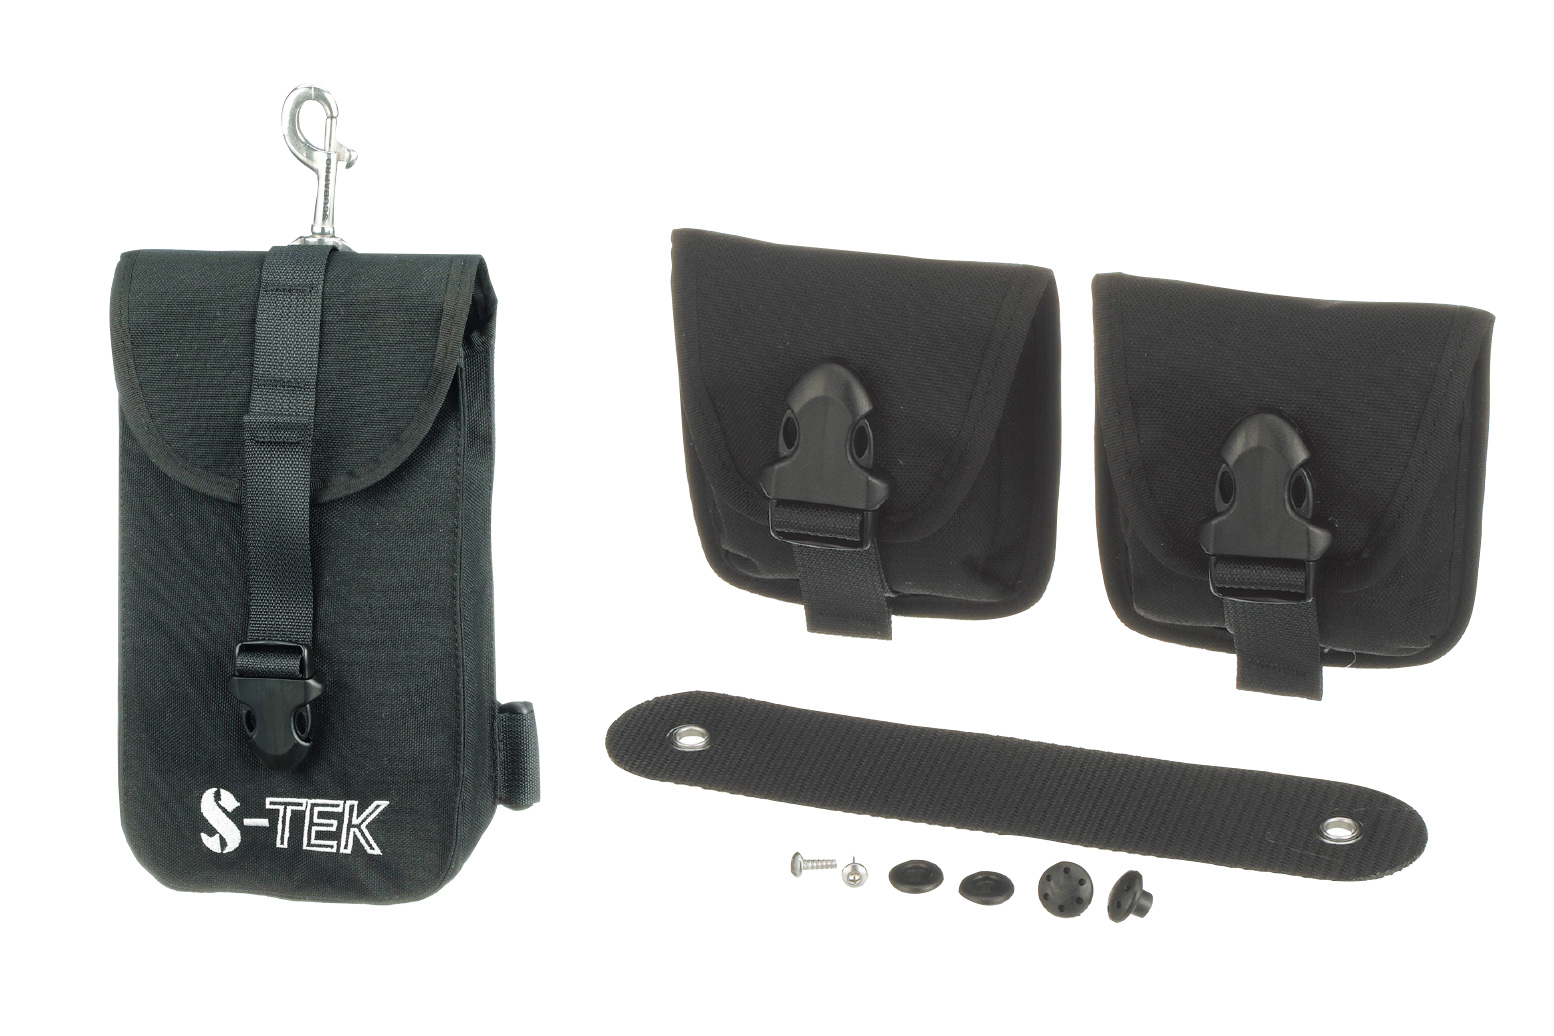 別売オプション
・Expedition Thigh Pocket（品番：23.614.000）￥13,750（税込）
・Trim Weight Pocket Kit （品番：23.609.000）￥13,200（税込）
